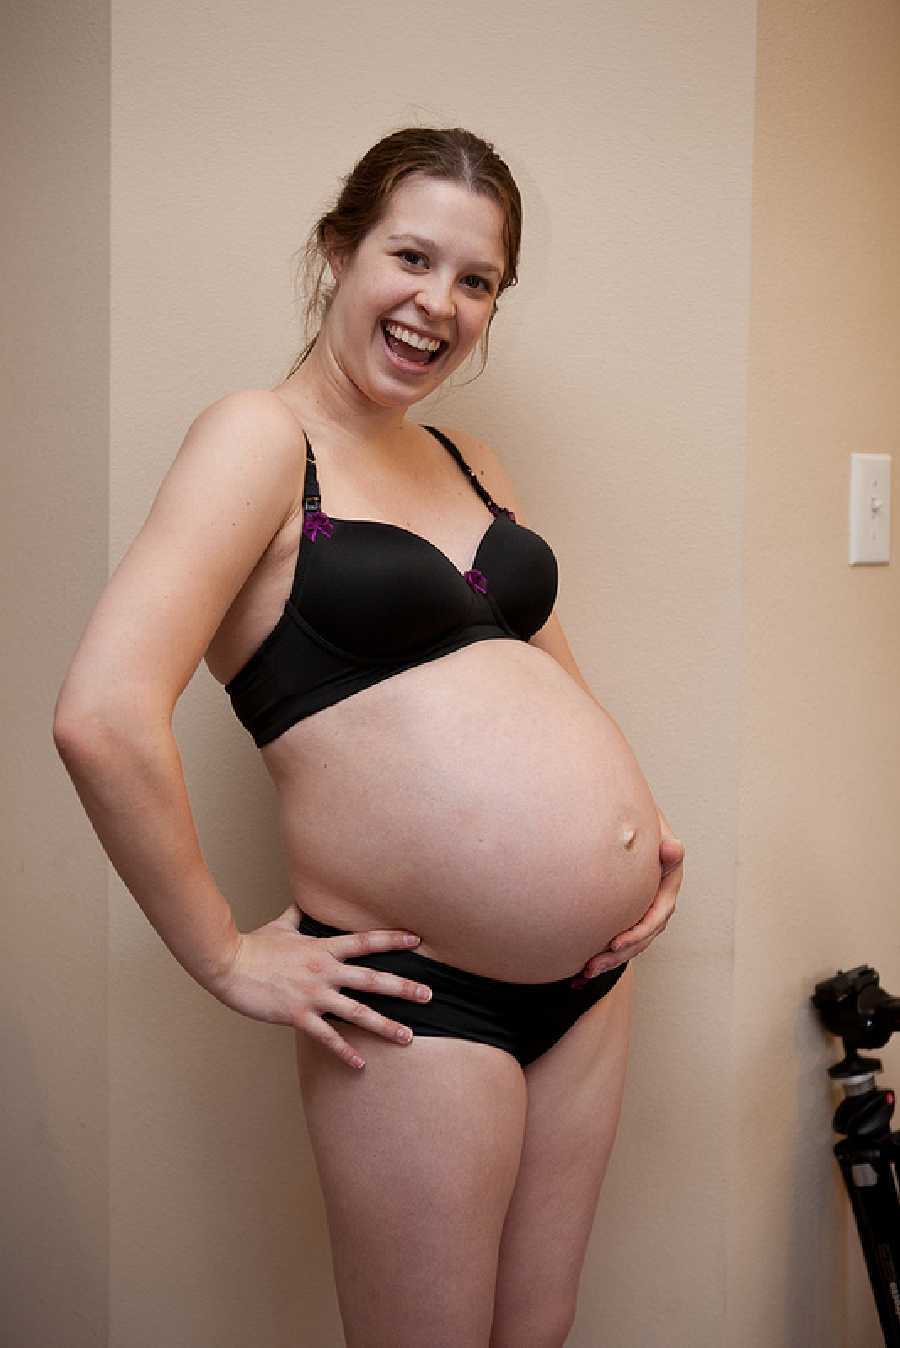 Amateur Pregnant Nudes pic image